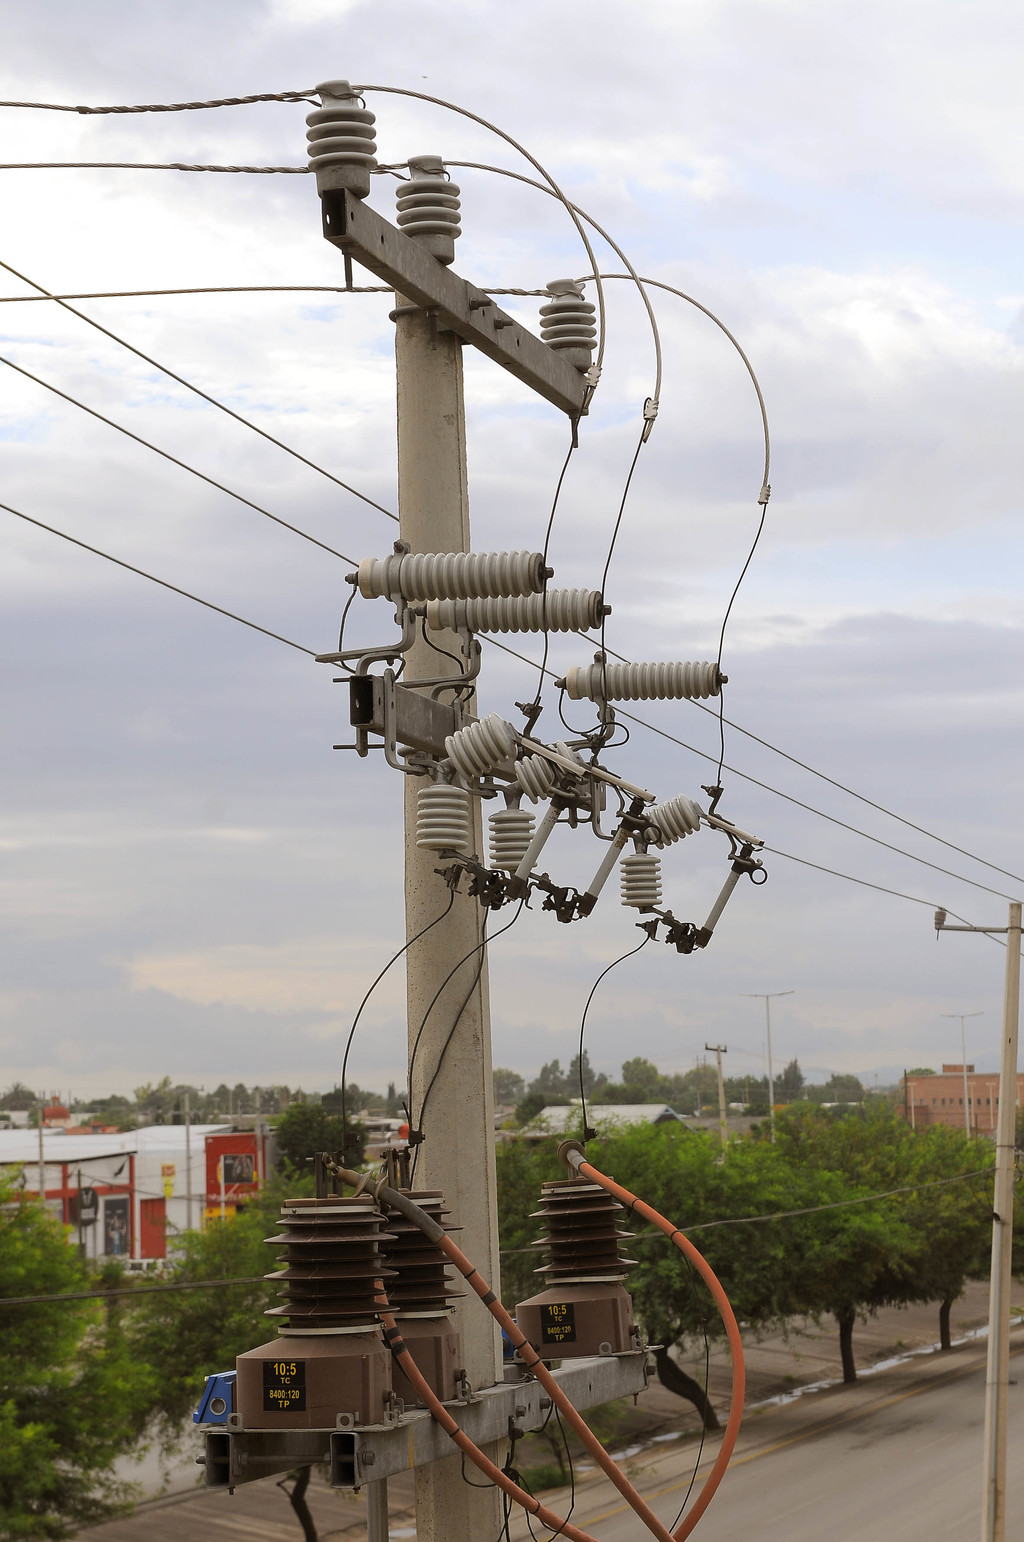 Viables, amparos contra reforma eléctrica en México: expertos